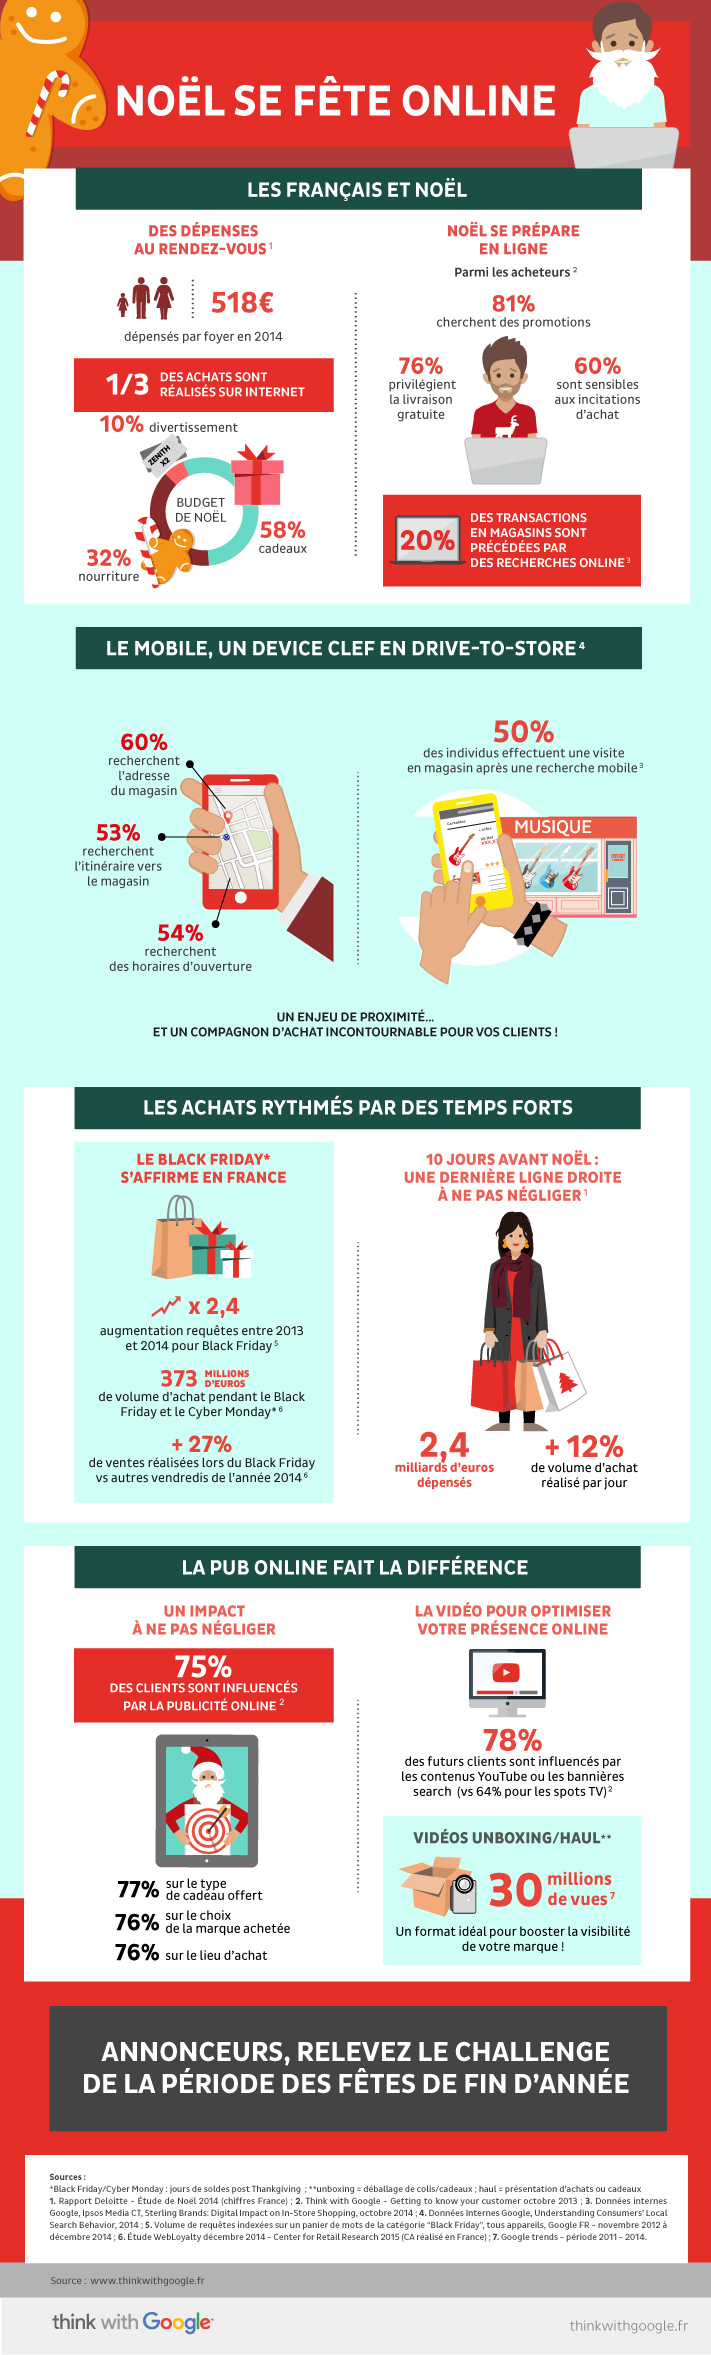 Infographie sur "Noël se fête online": les Français utilisent leur smartphone pour préparer les fêtes de fin d'année.